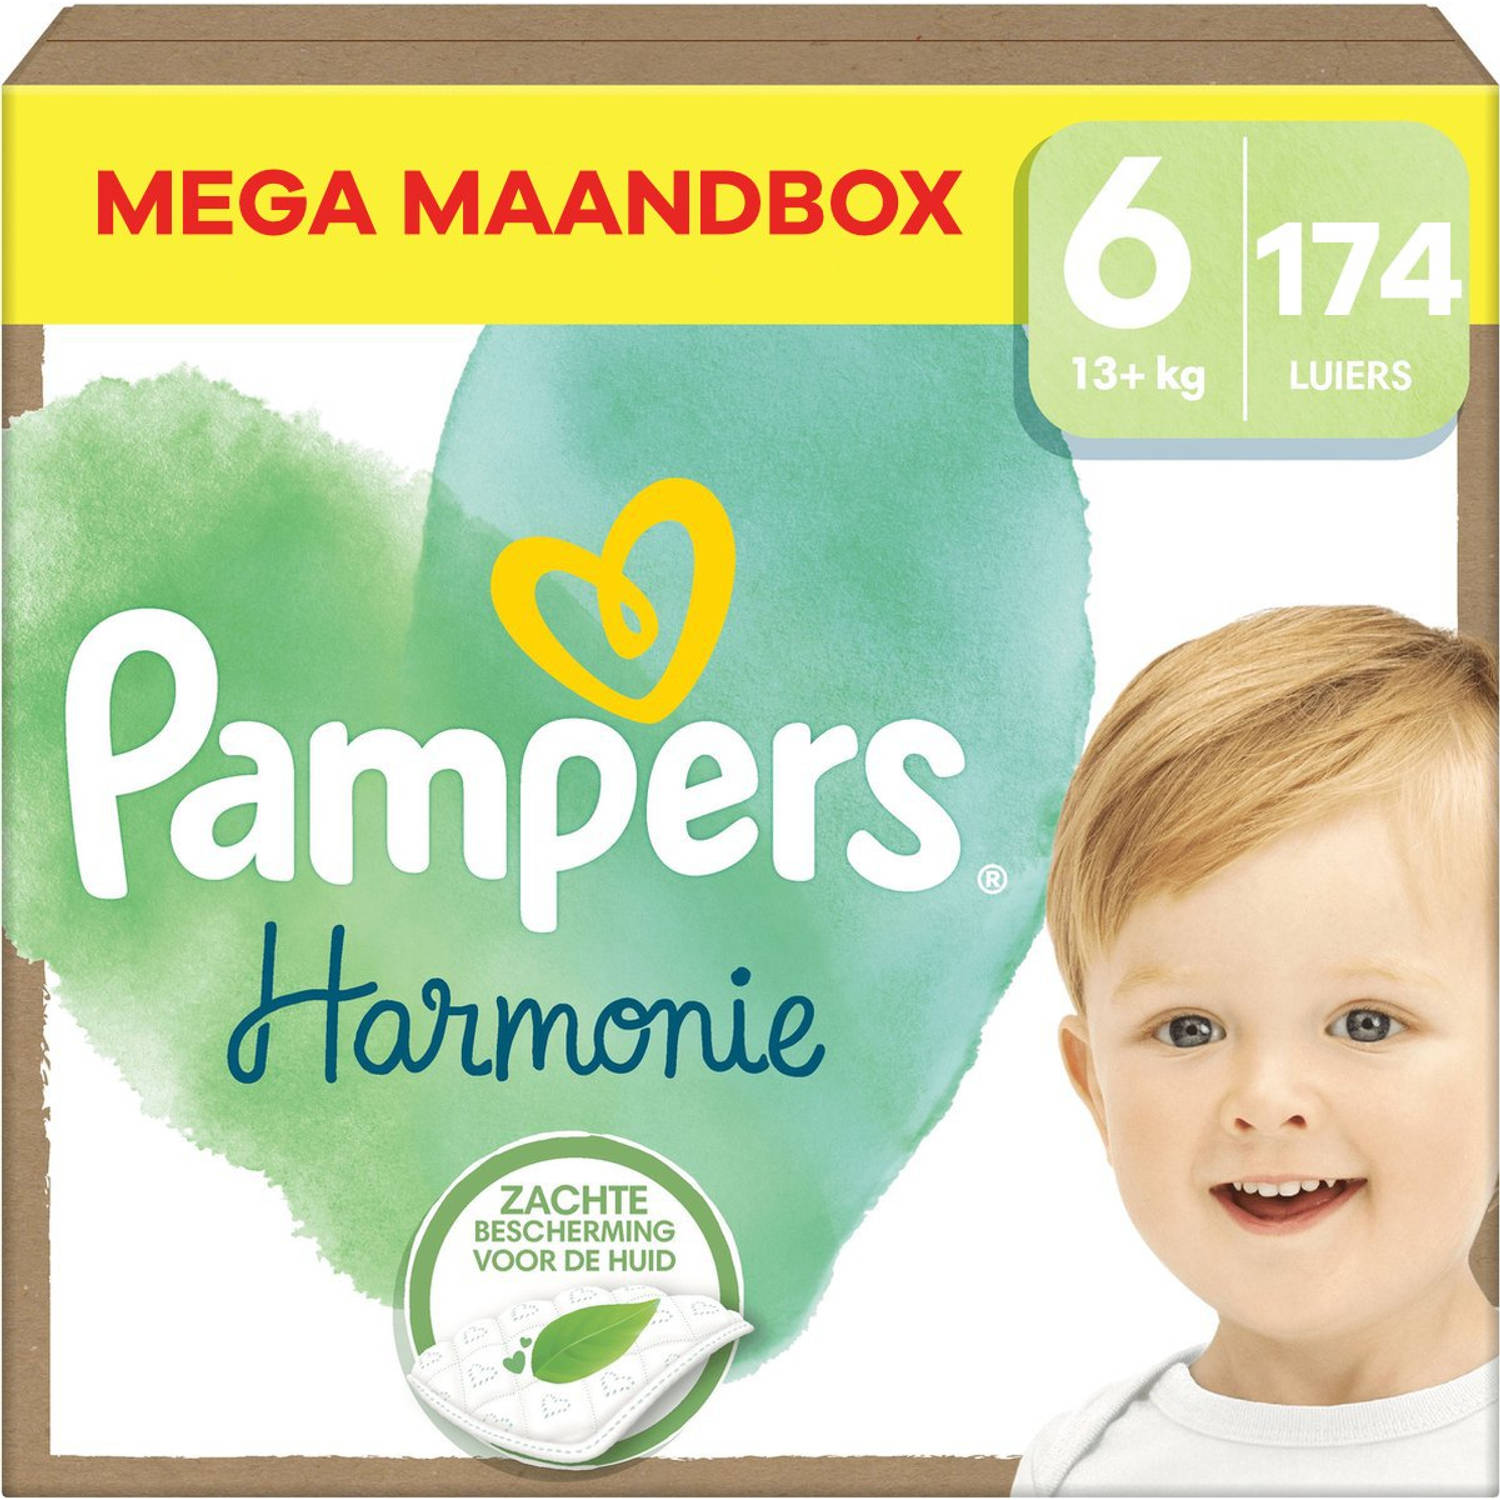 Pampers Harmonie Maat 6 Mega Maandbox 174 luiers 13+ KG